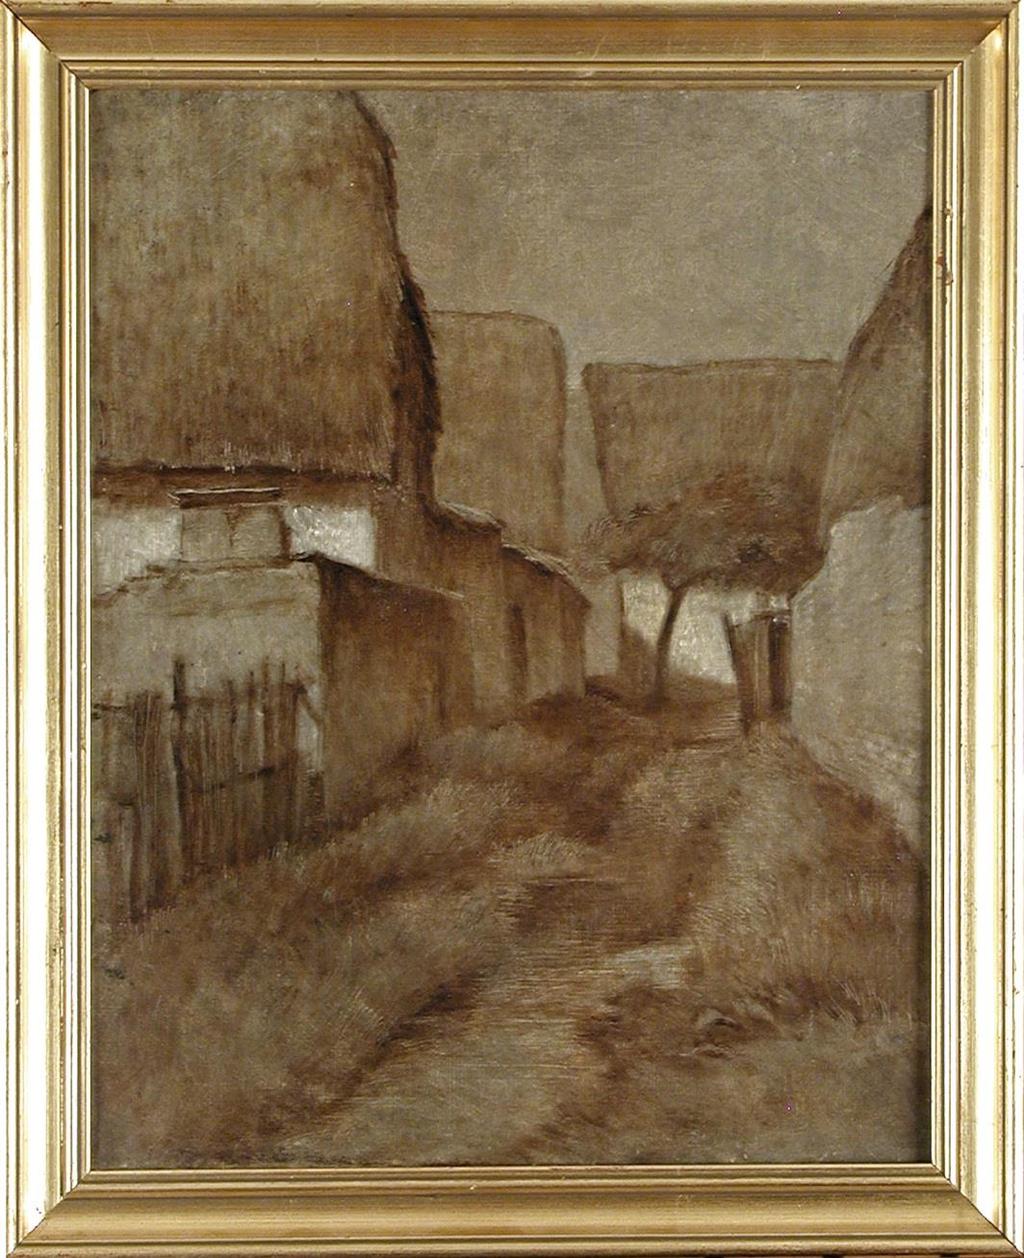 Village français (Francouzská vesnice), 1885-1890, huile sur toile (grisaille)